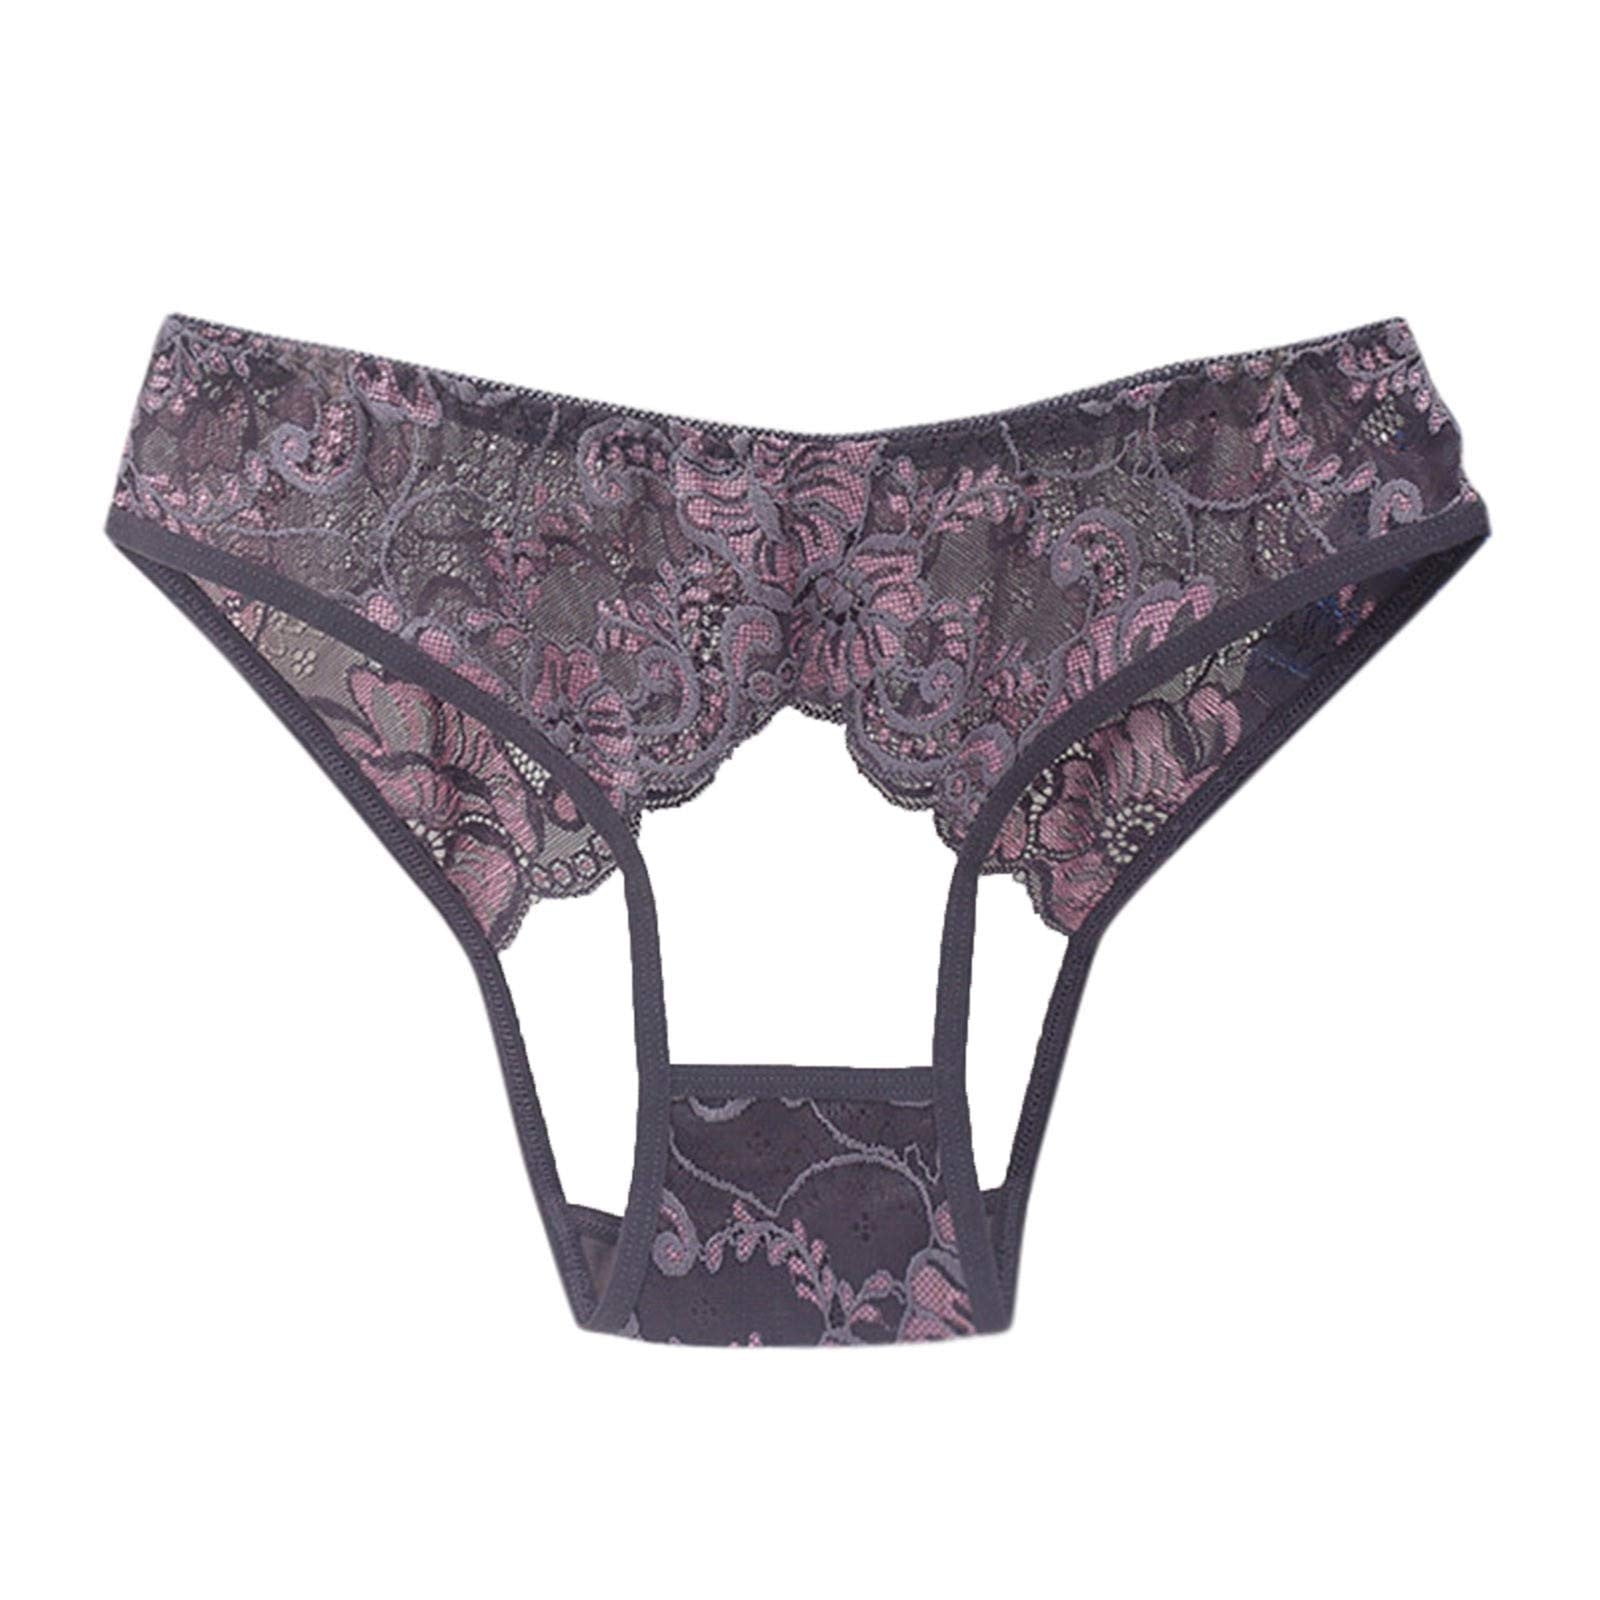 Lopecy-Sta Ladies Silk Lace Handmade Underwear Mid-raist Hollow